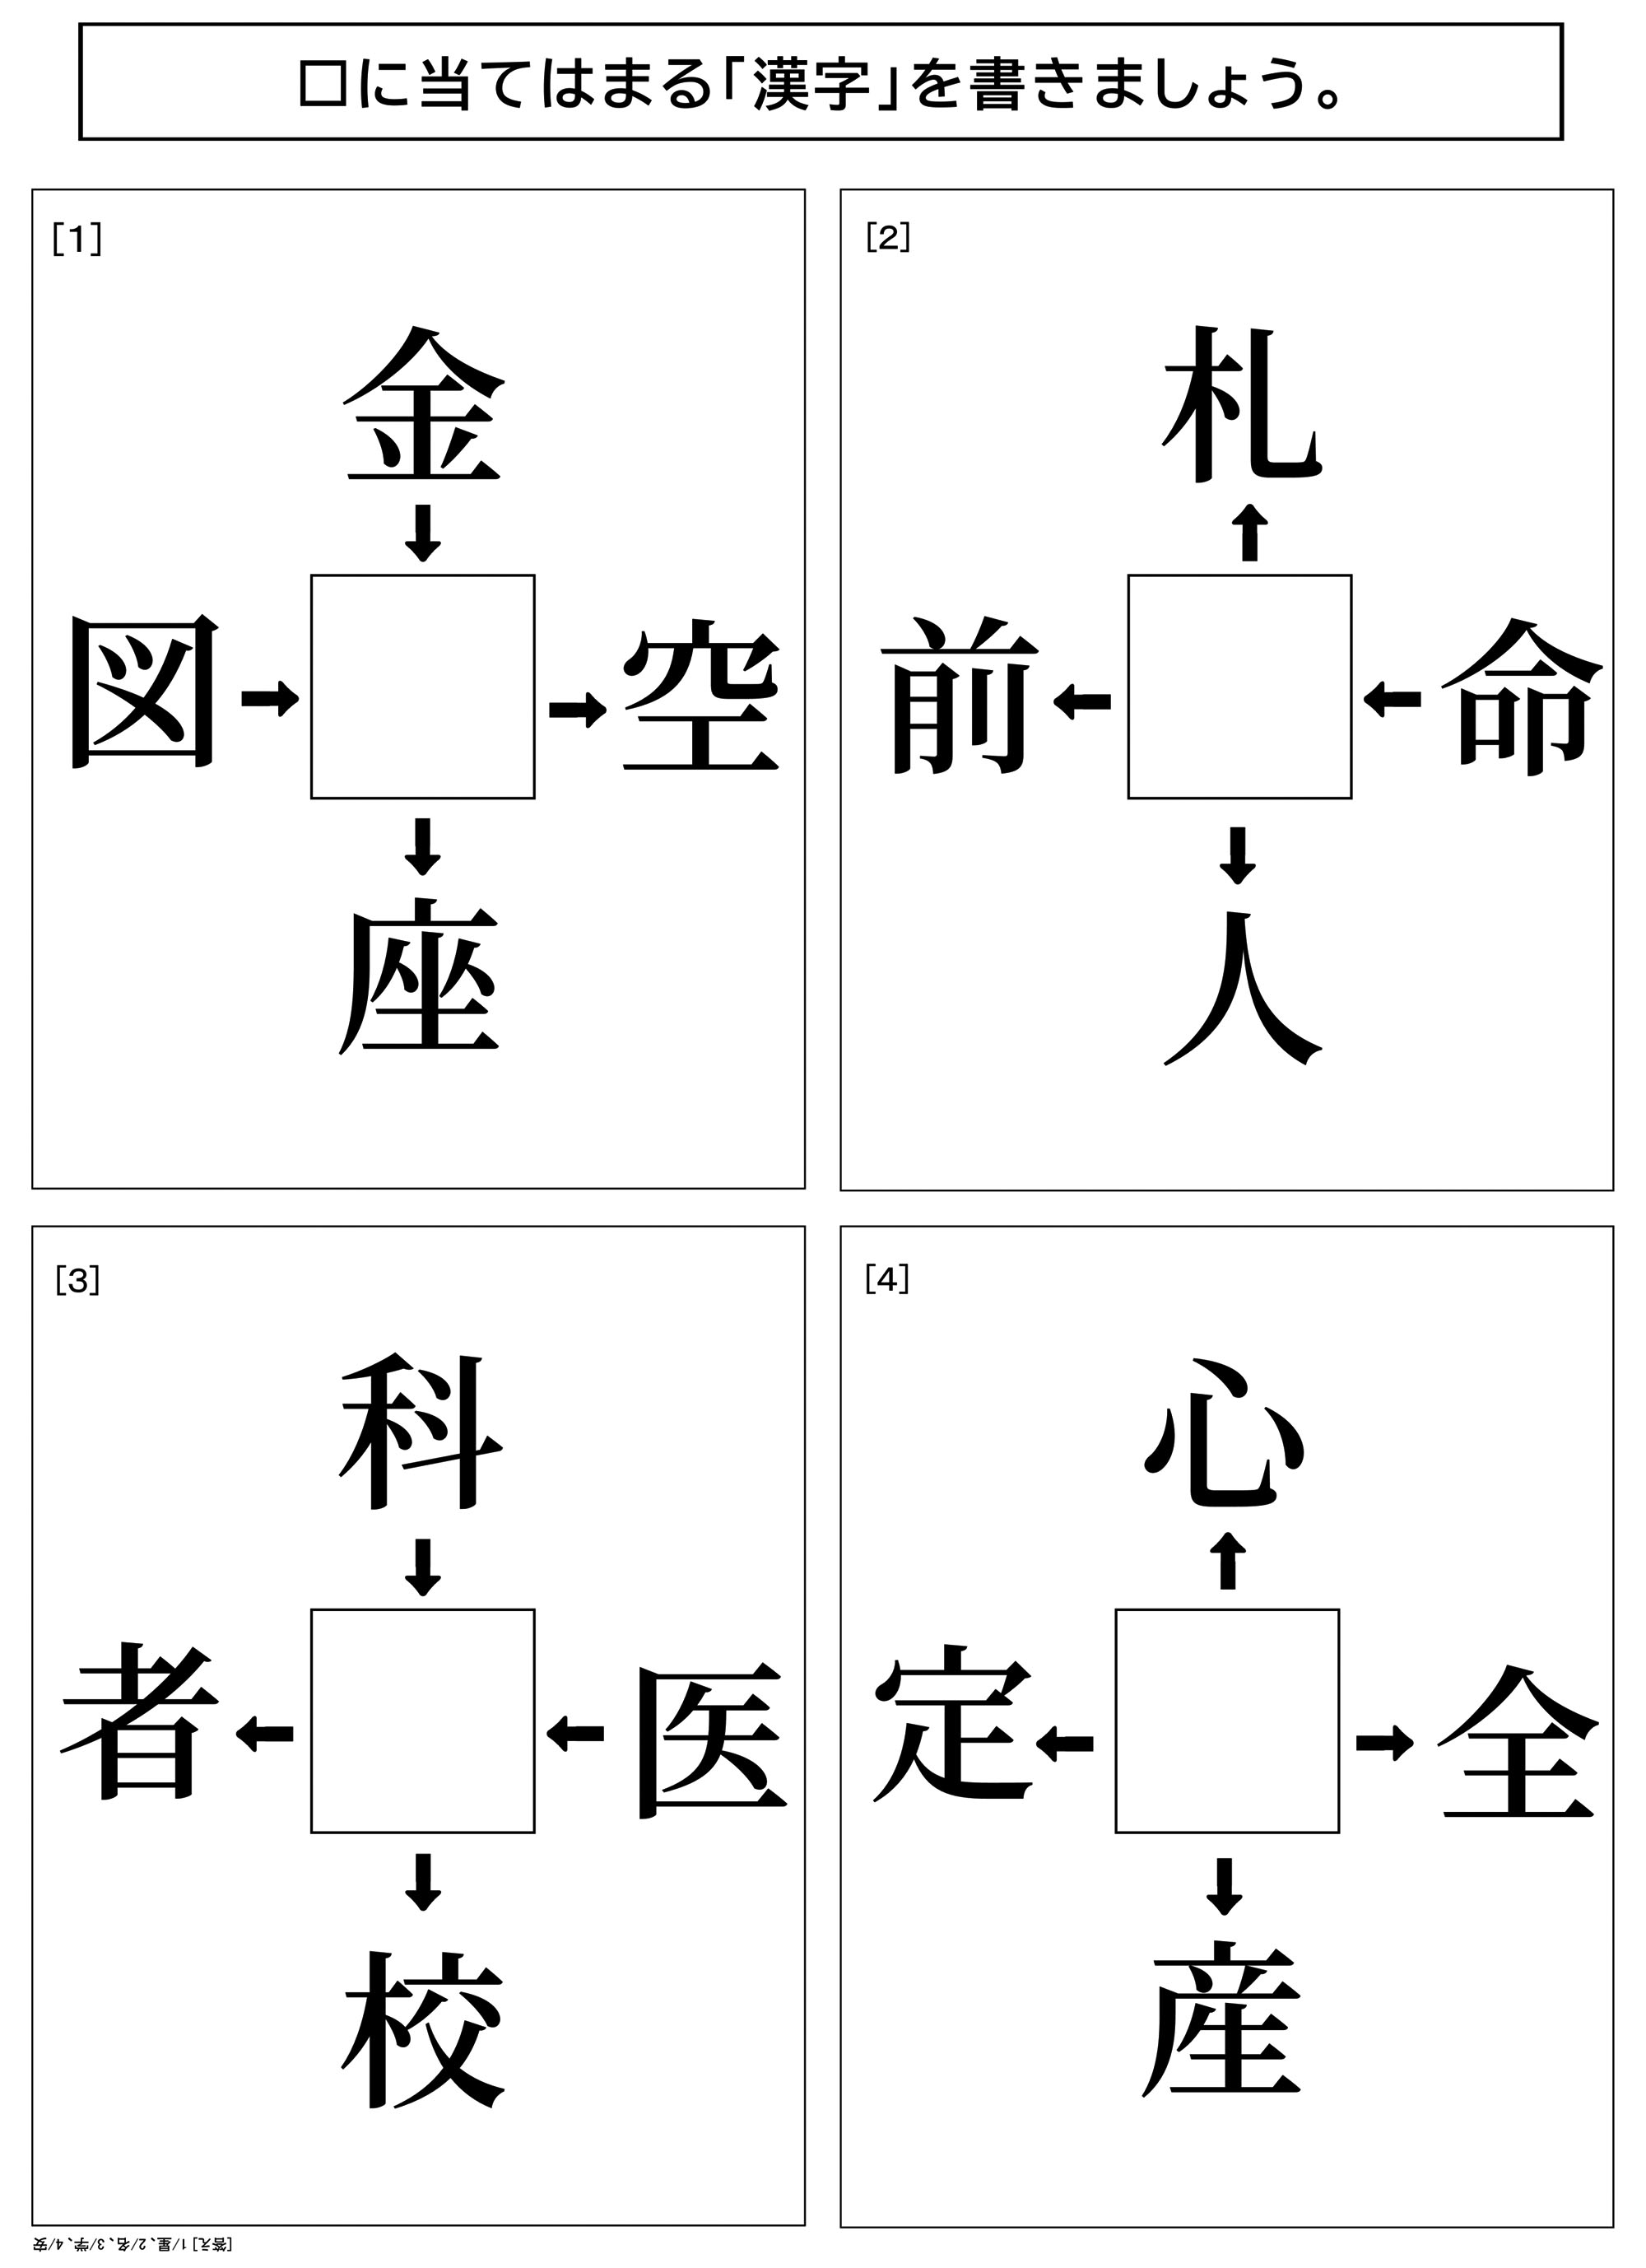 レク素材 漢字で穴埋めクイズ 介護レク広場 レク素材やレクネタ 企画書 の無料ダウンロード